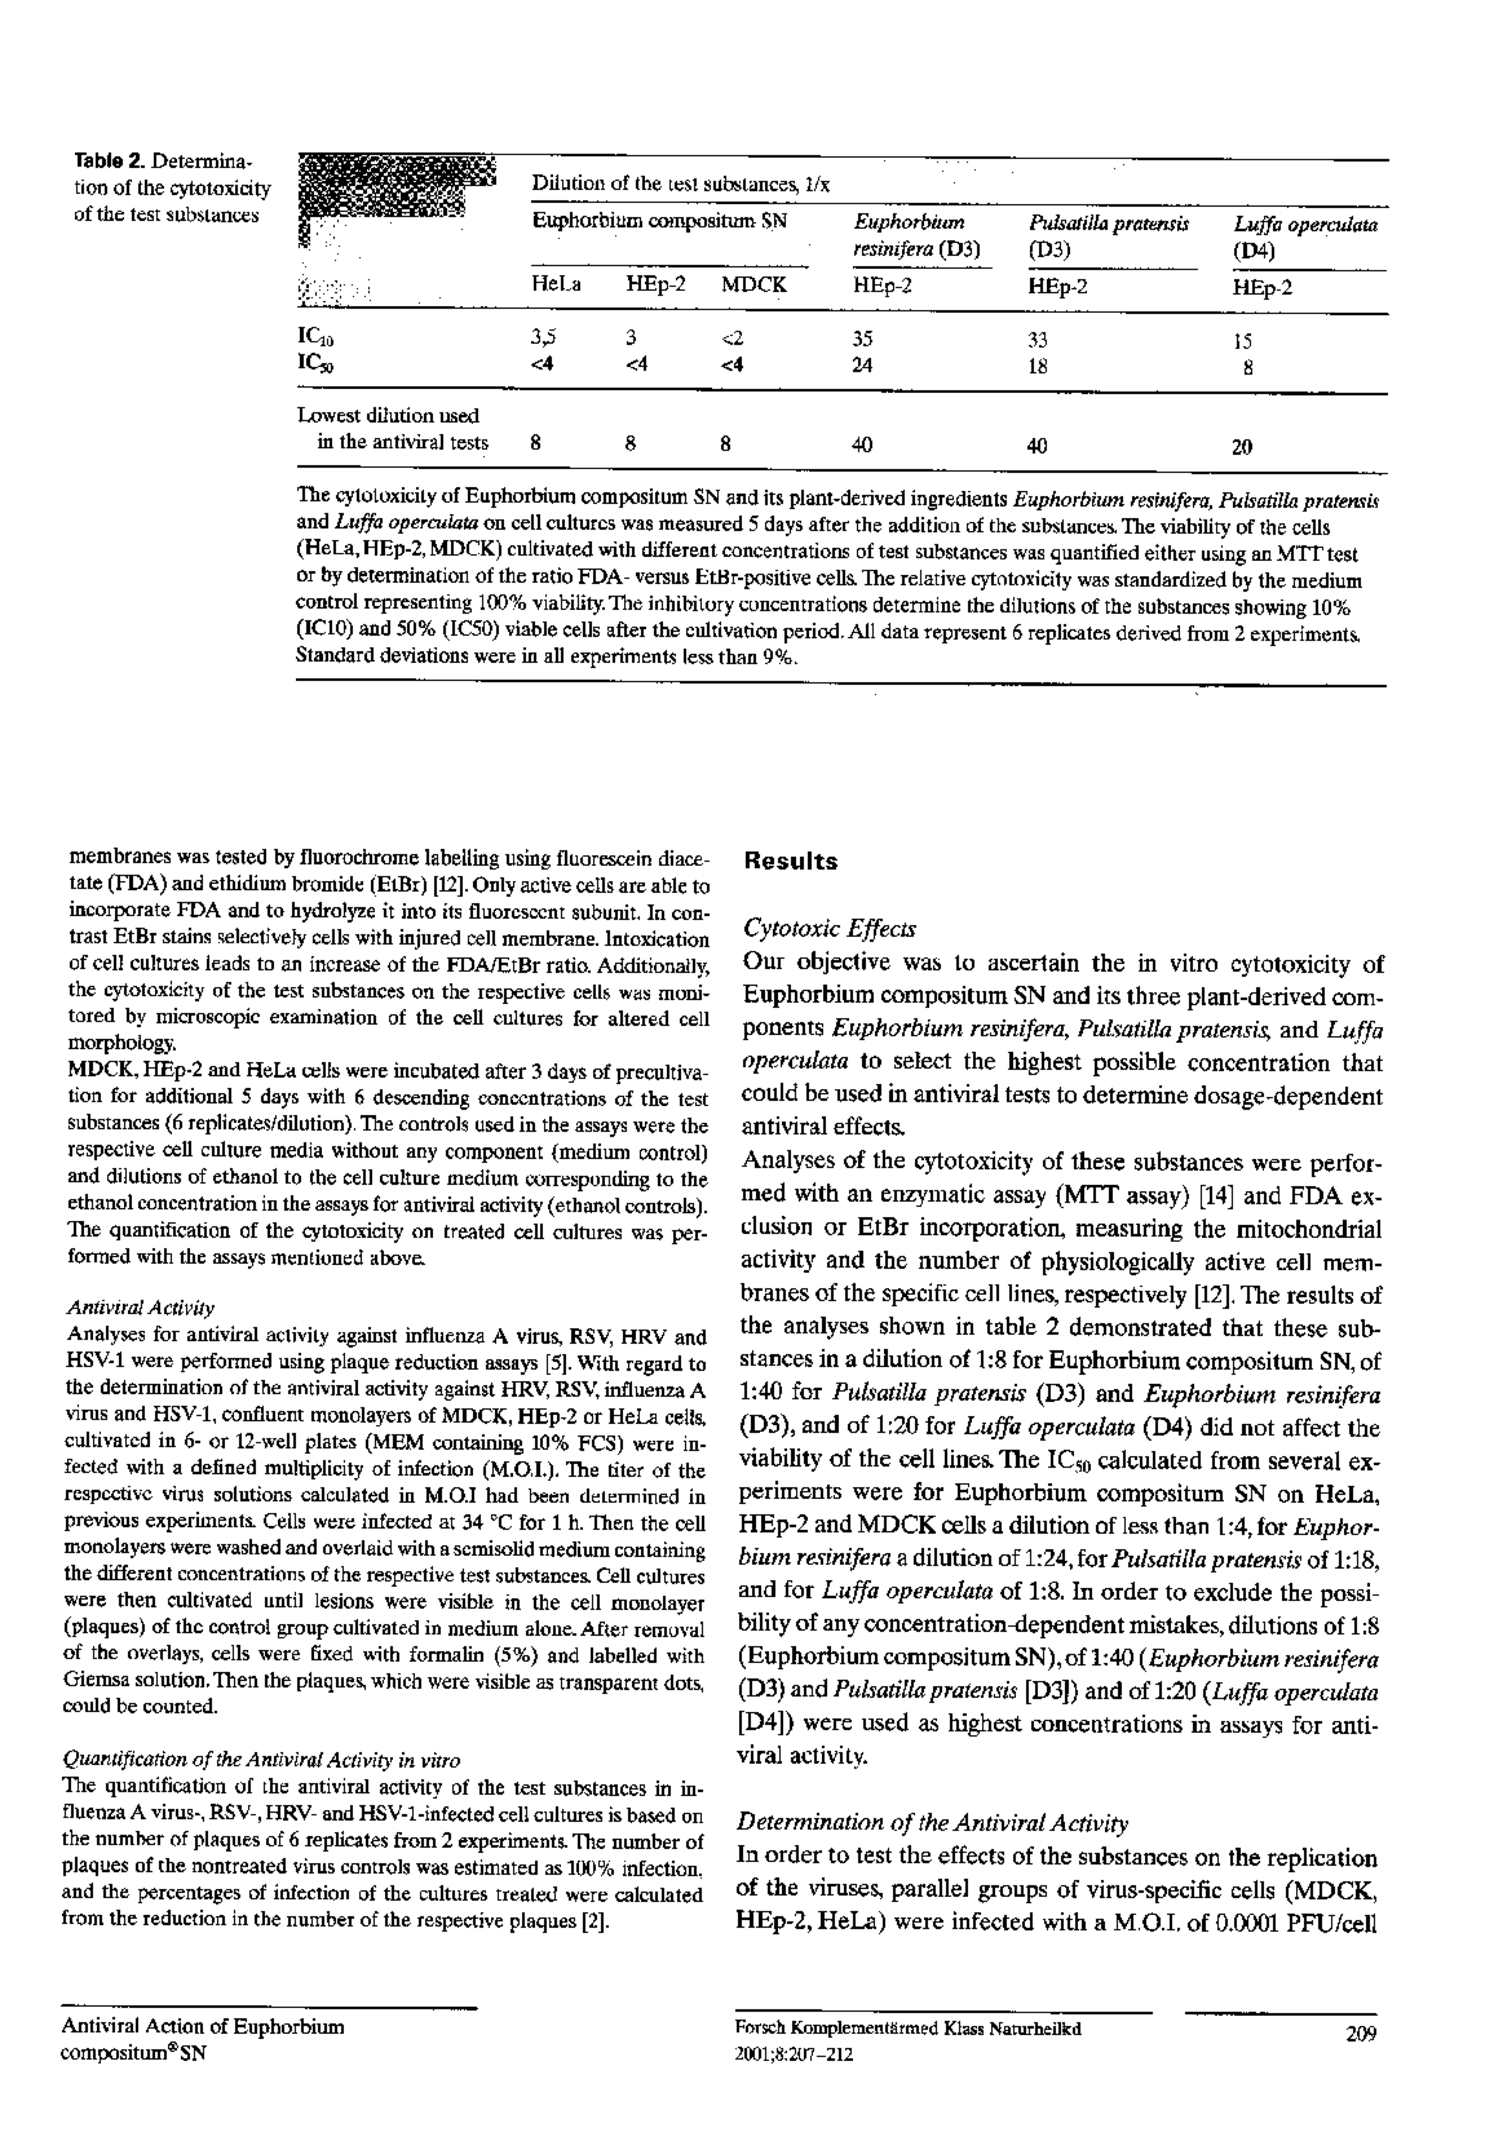 Euphorbium Compositum Tabletten afbeelding van document #3, productonderzoek